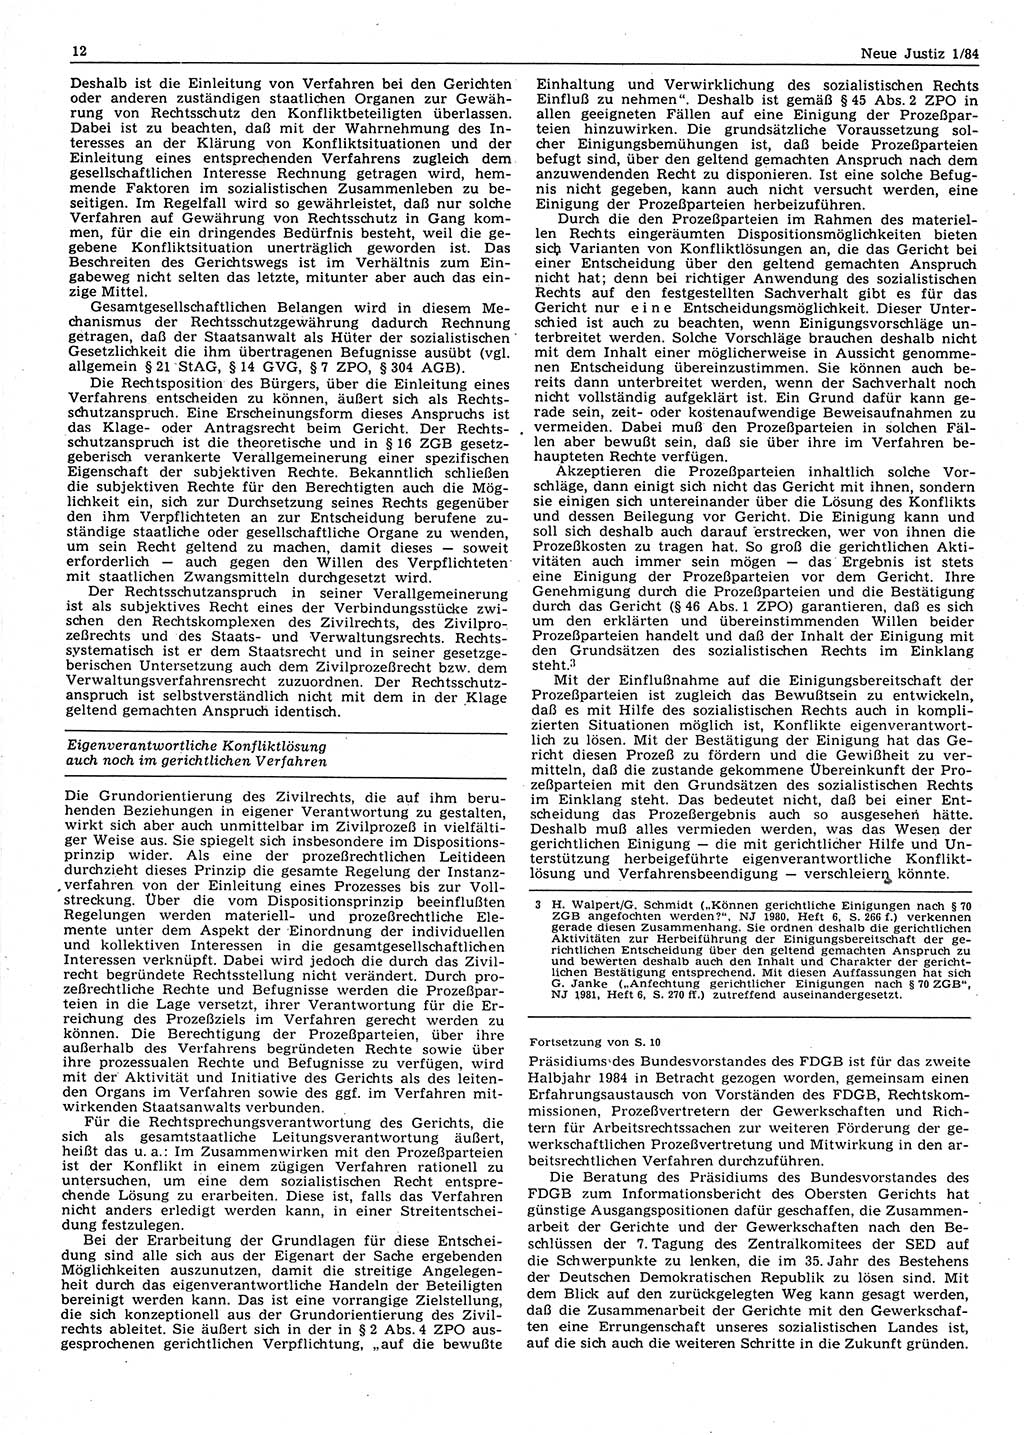 Neue Justiz (NJ), Zeitschrift für sozialistisches Recht und Gesetzlichkeit [Deutsche Demokratische Republik (DDR)], 38. Jahrgang 1984, Seite 12 (NJ DDR 1984, S. 12)